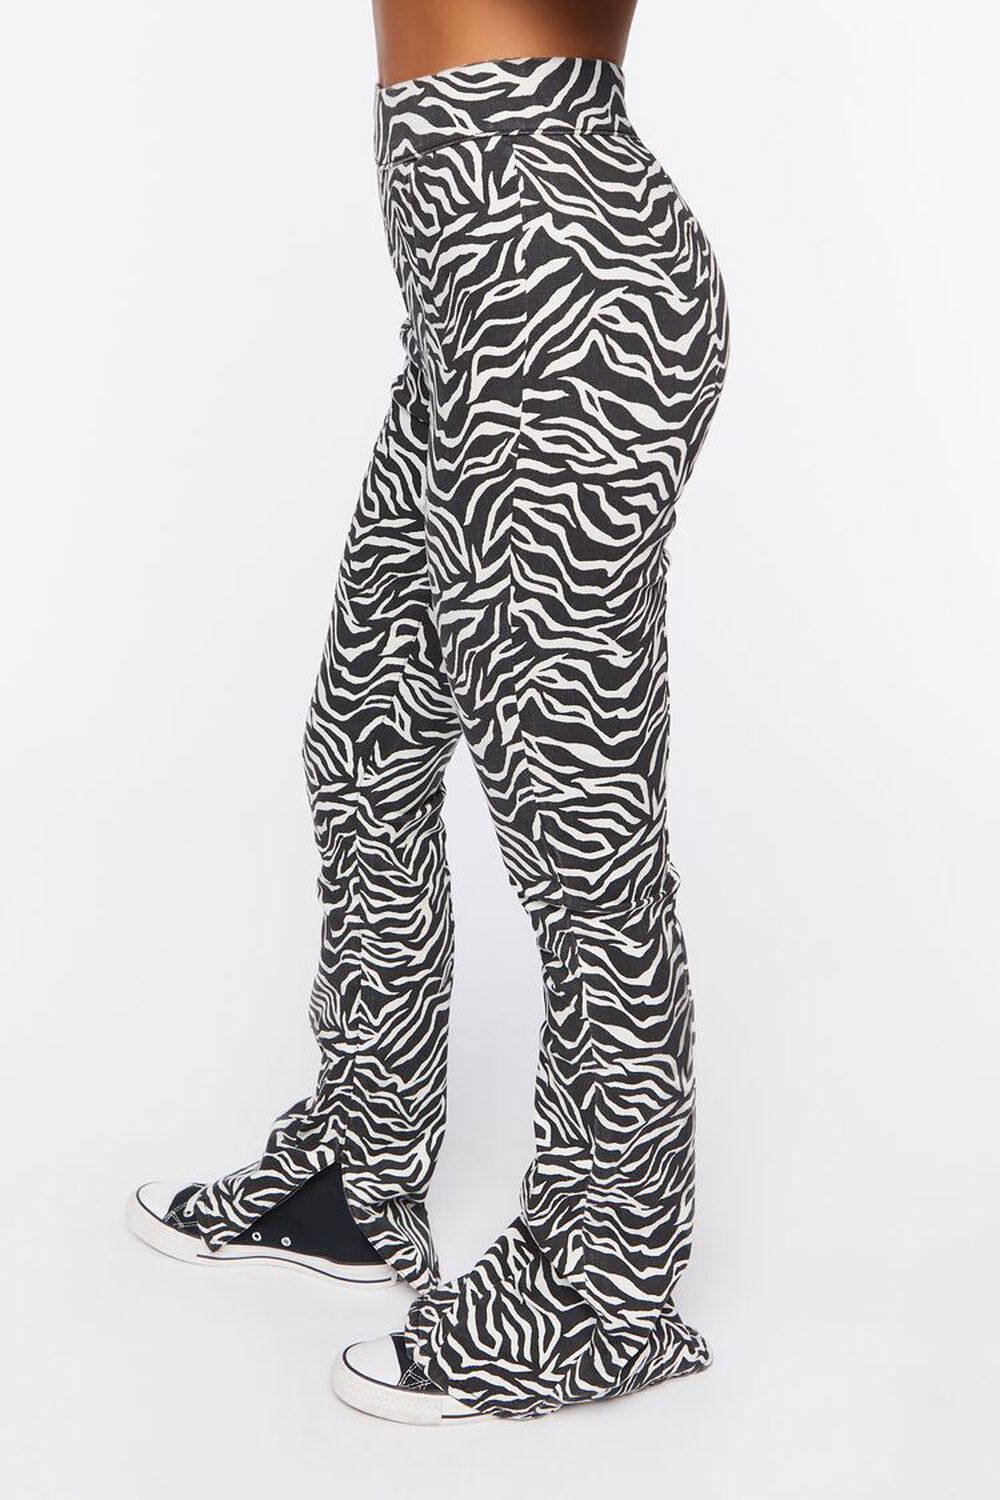 BLACK/WHITE Zebra Print Bootcut Jeans, image 3